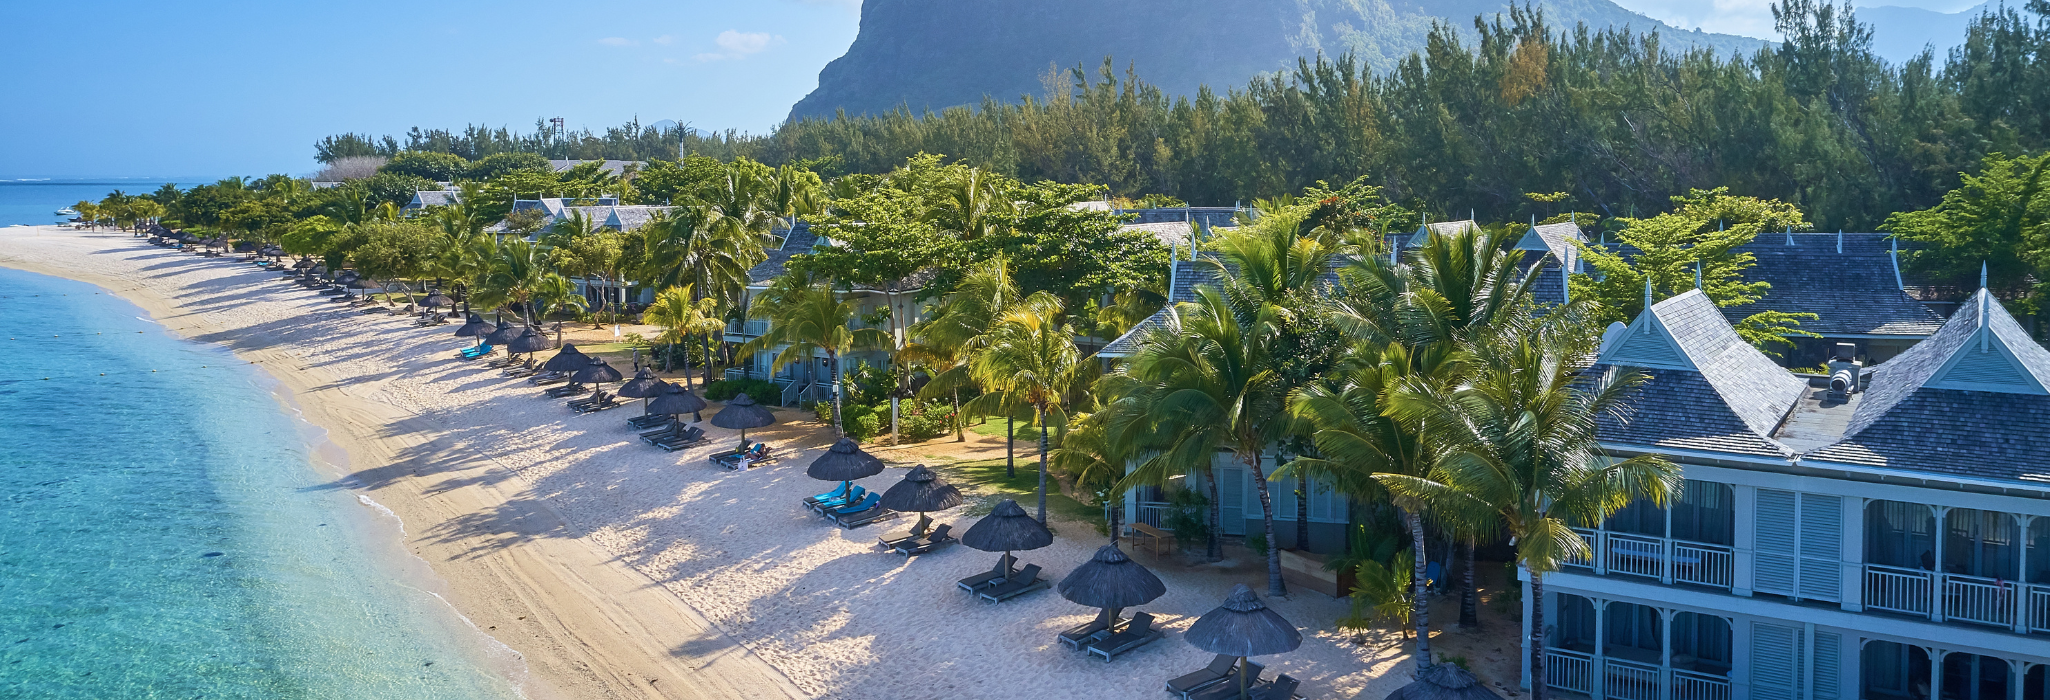 strandnära hotell på vackra mauritius